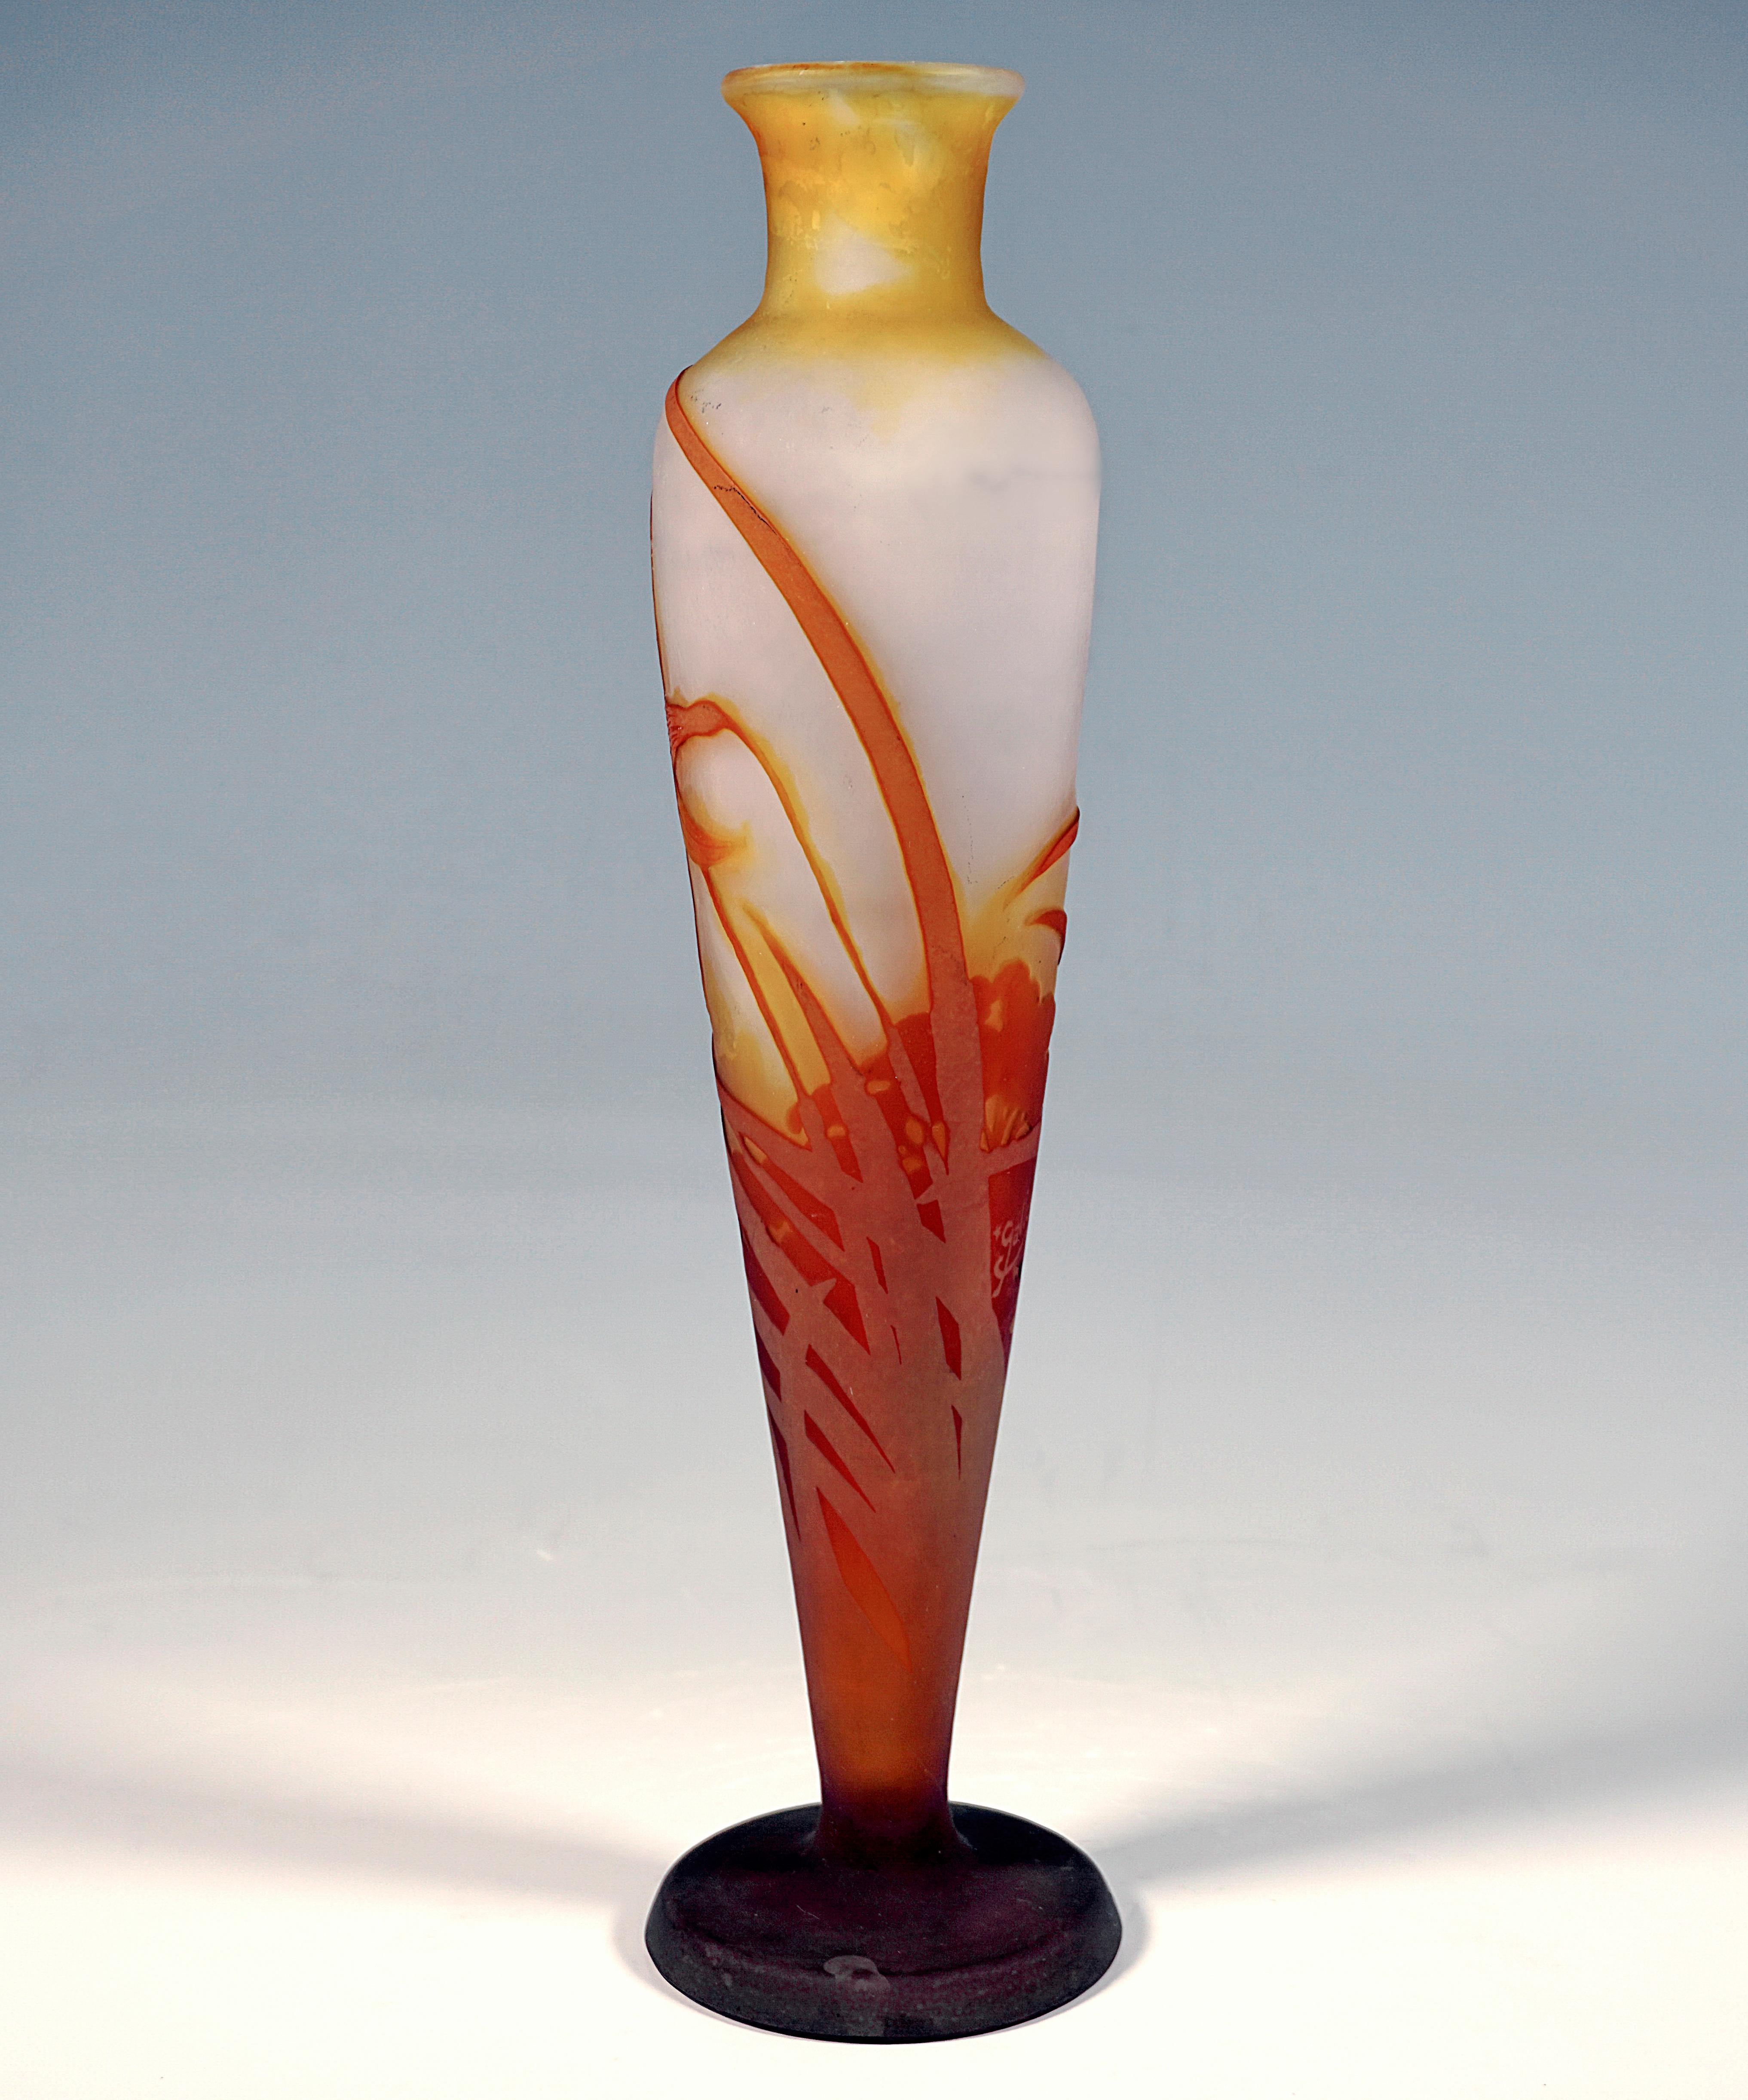 Etched Émile Gallé Art Nouveau Cameo Vase With Daffodil Decor, France, Circa 1904 For Sale